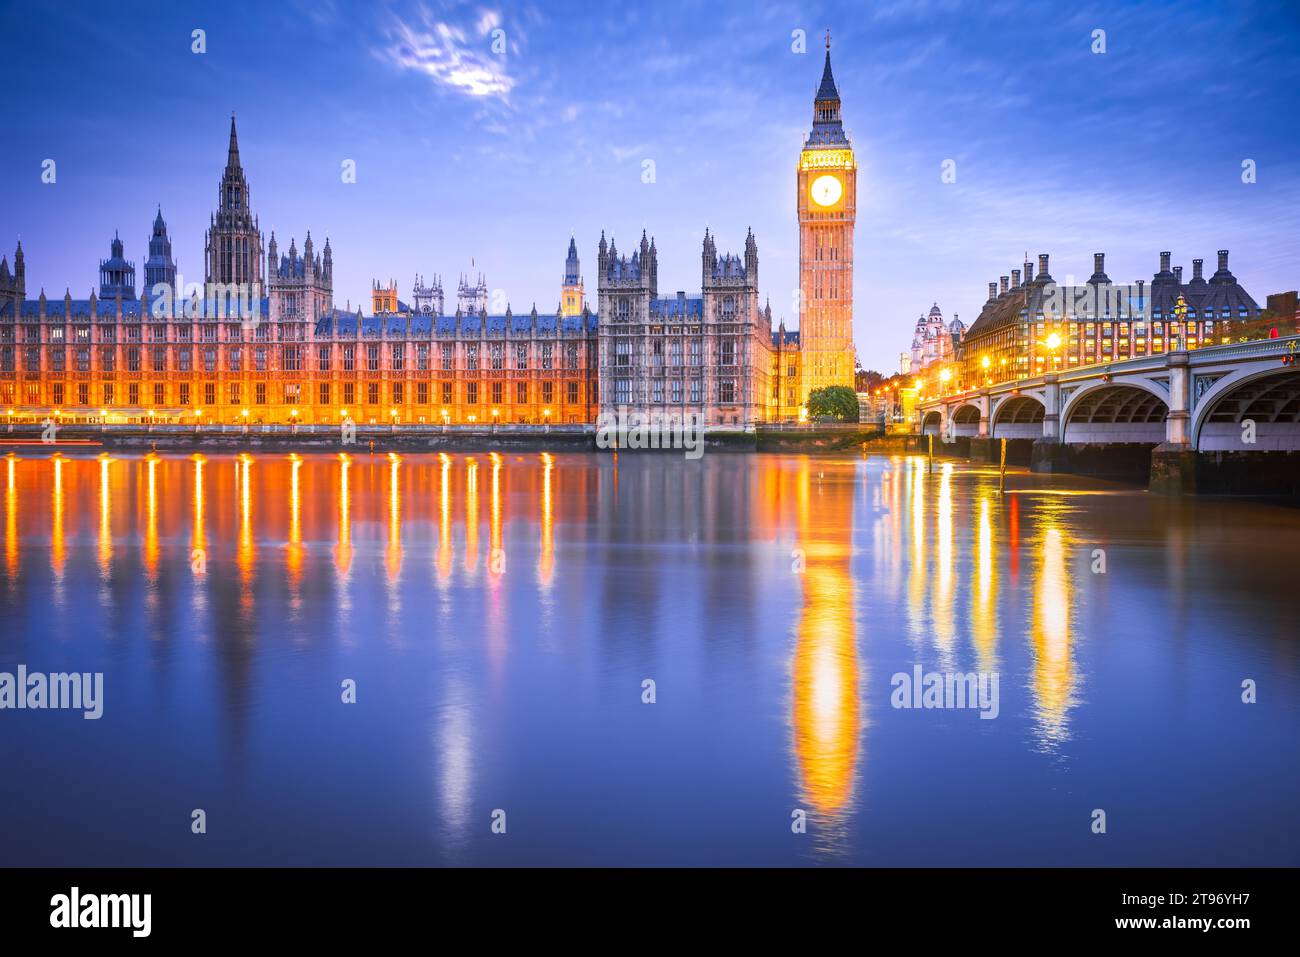 London, Vereinigtes Königreich. Westminster Bridge, Big Ben und House of Commons Gebäude im Hintergrund, reisen englische Wahrzeichen zur blauen Stunde. Stockfoto